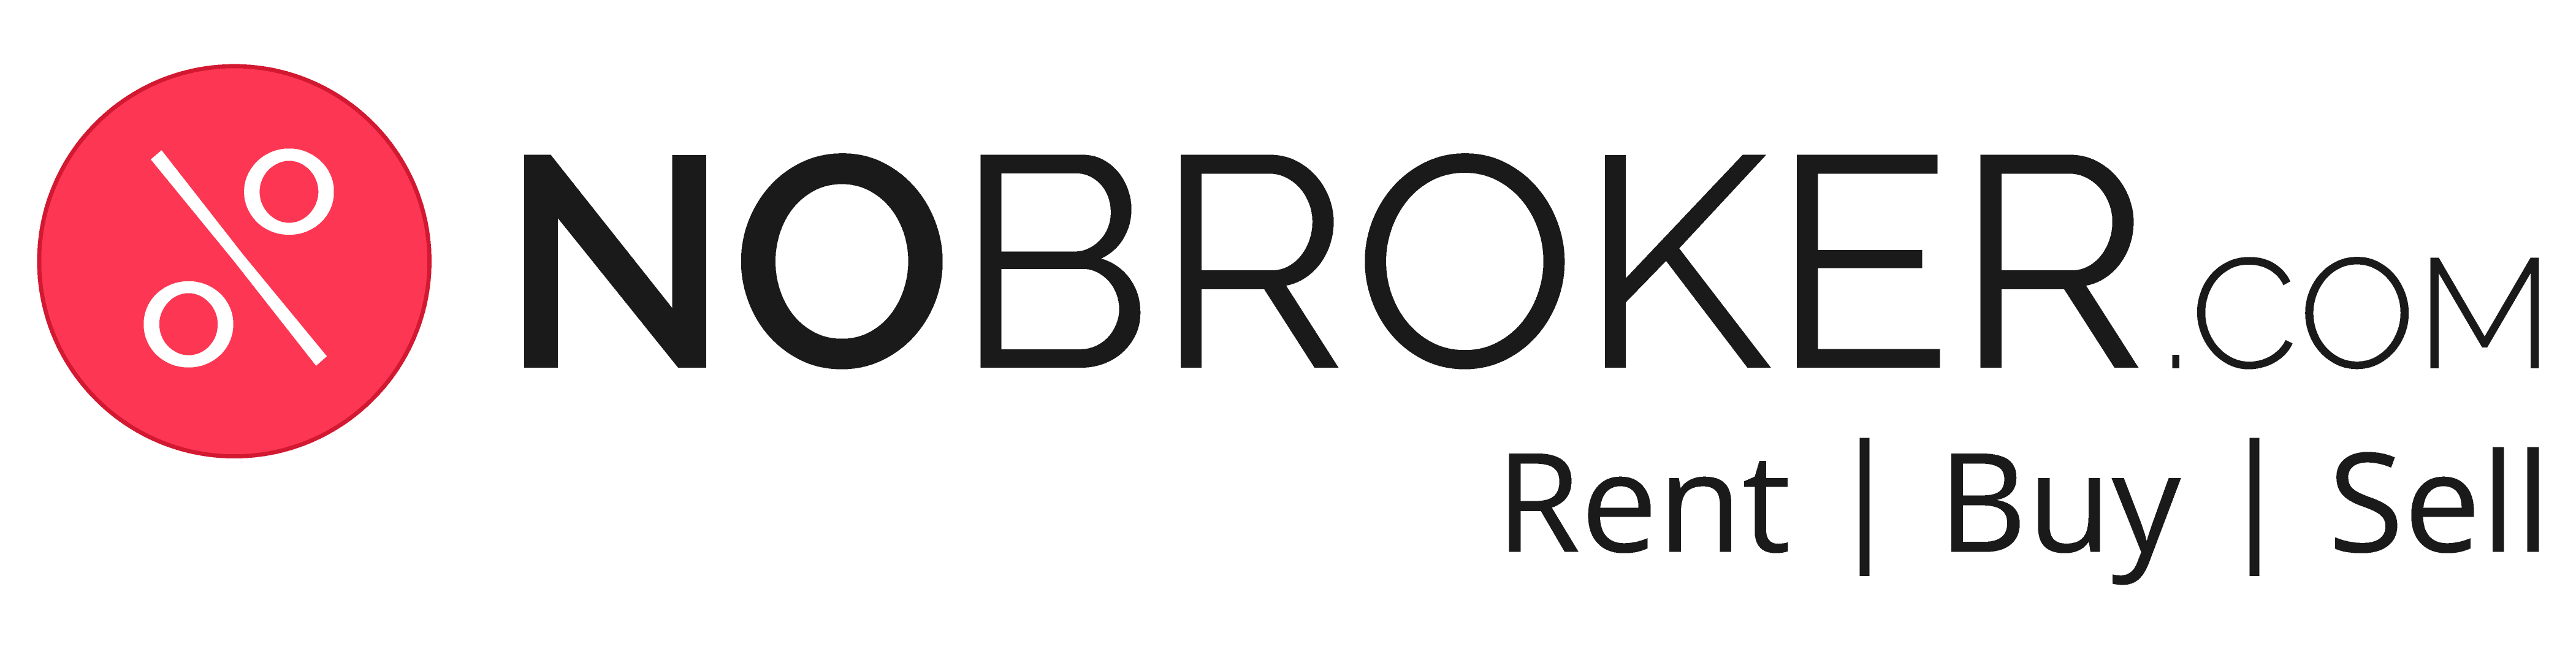 NoBroker.com New Logo